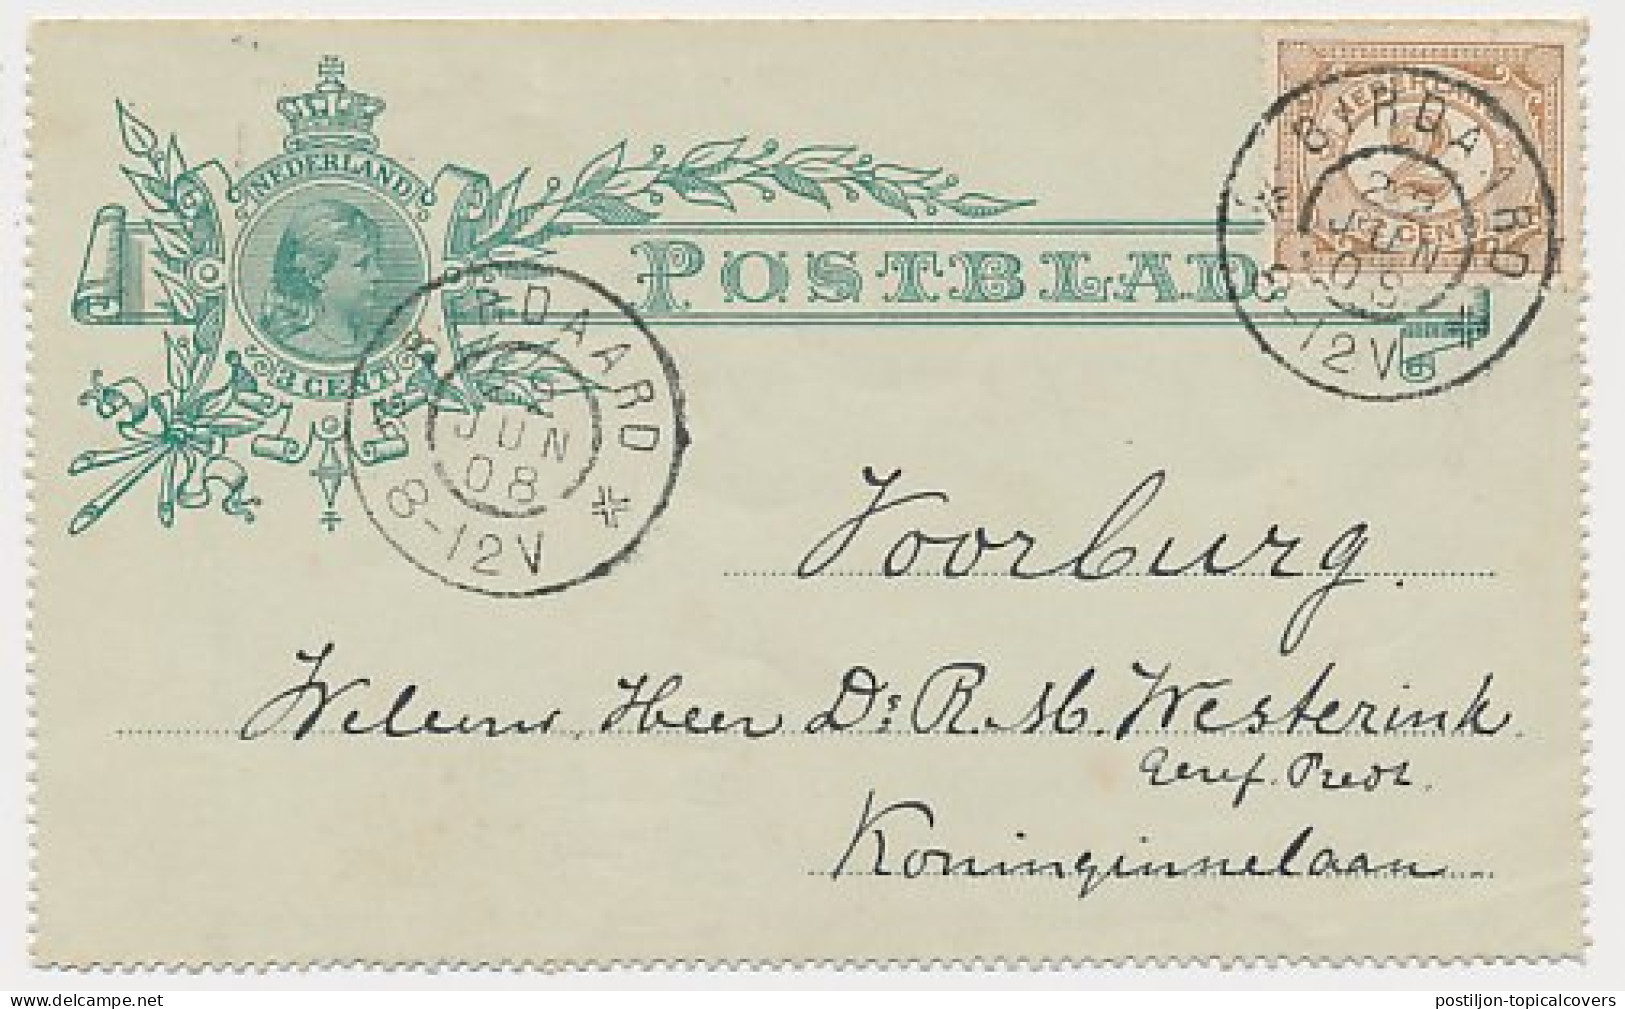 Postblad G. 3.x / Bijfrankering Birdaard - Voorburg 1908 - Postal Stationery